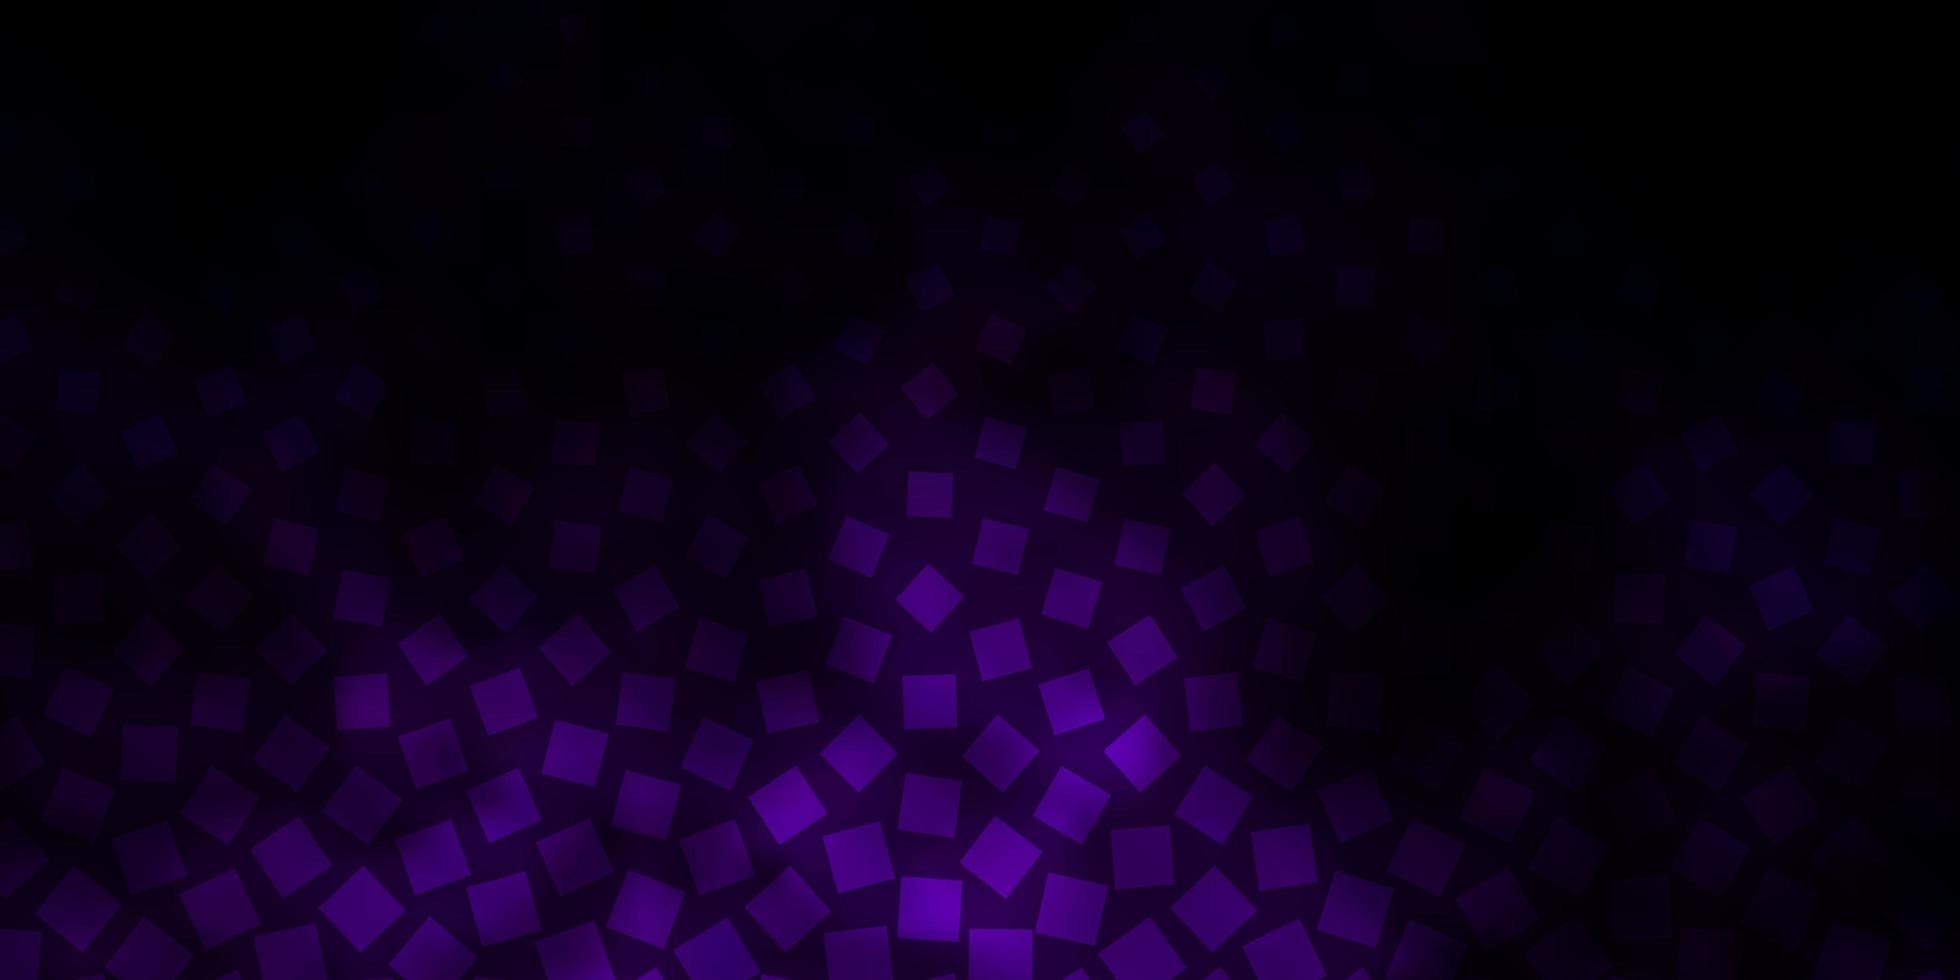 patrón de vector de color púrpura oscuro en estilo cuadrado.